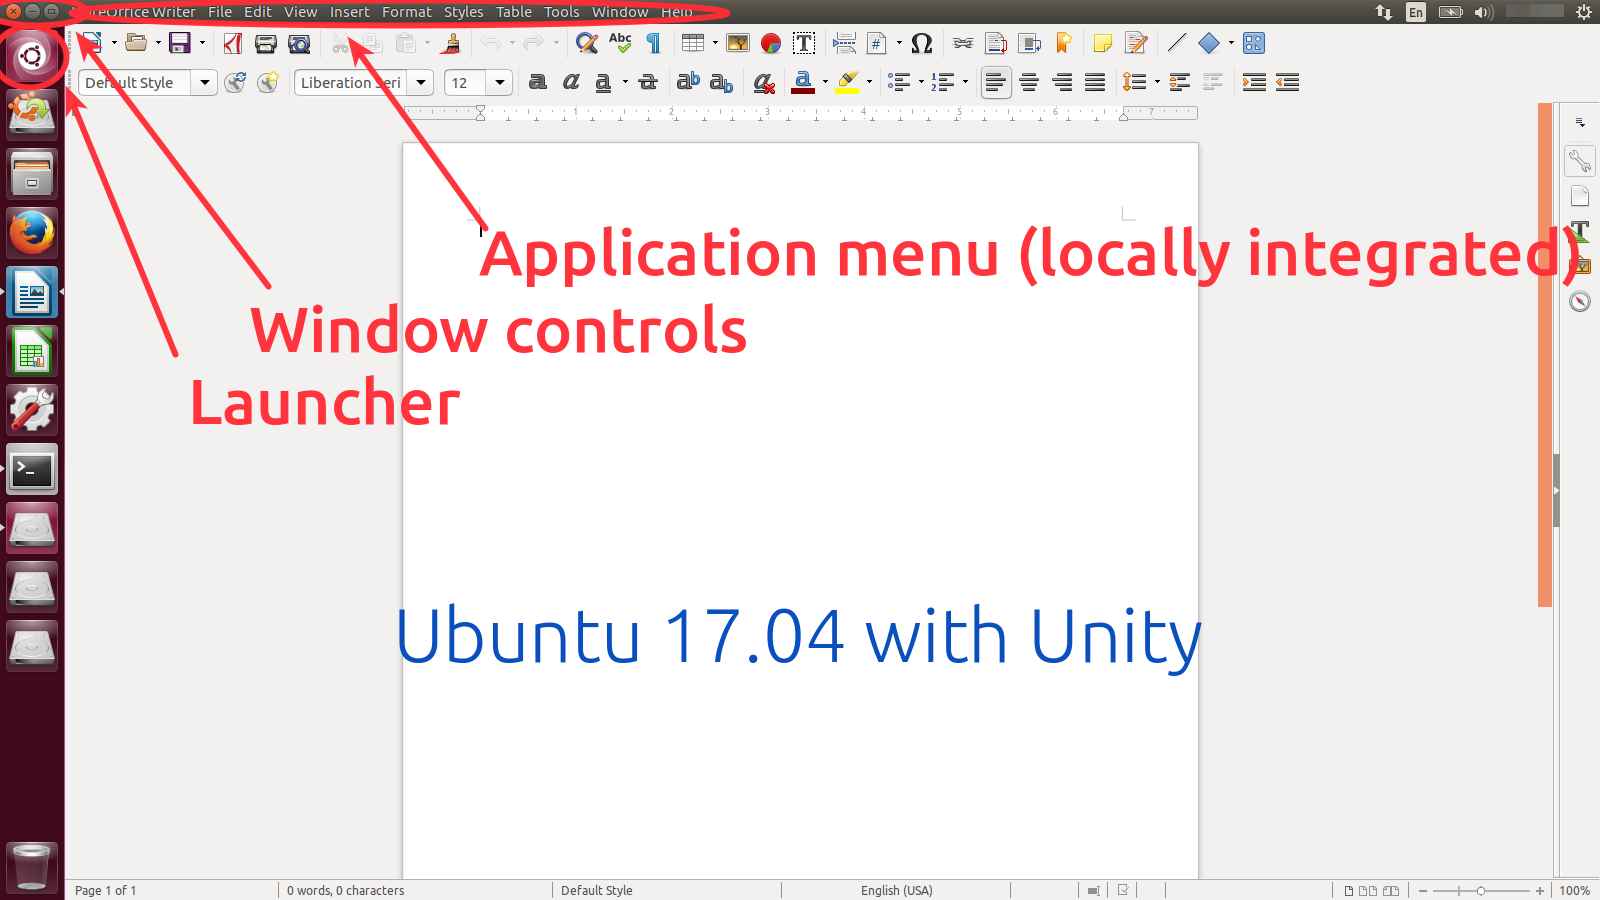 Controls in Ubuntu 17.04